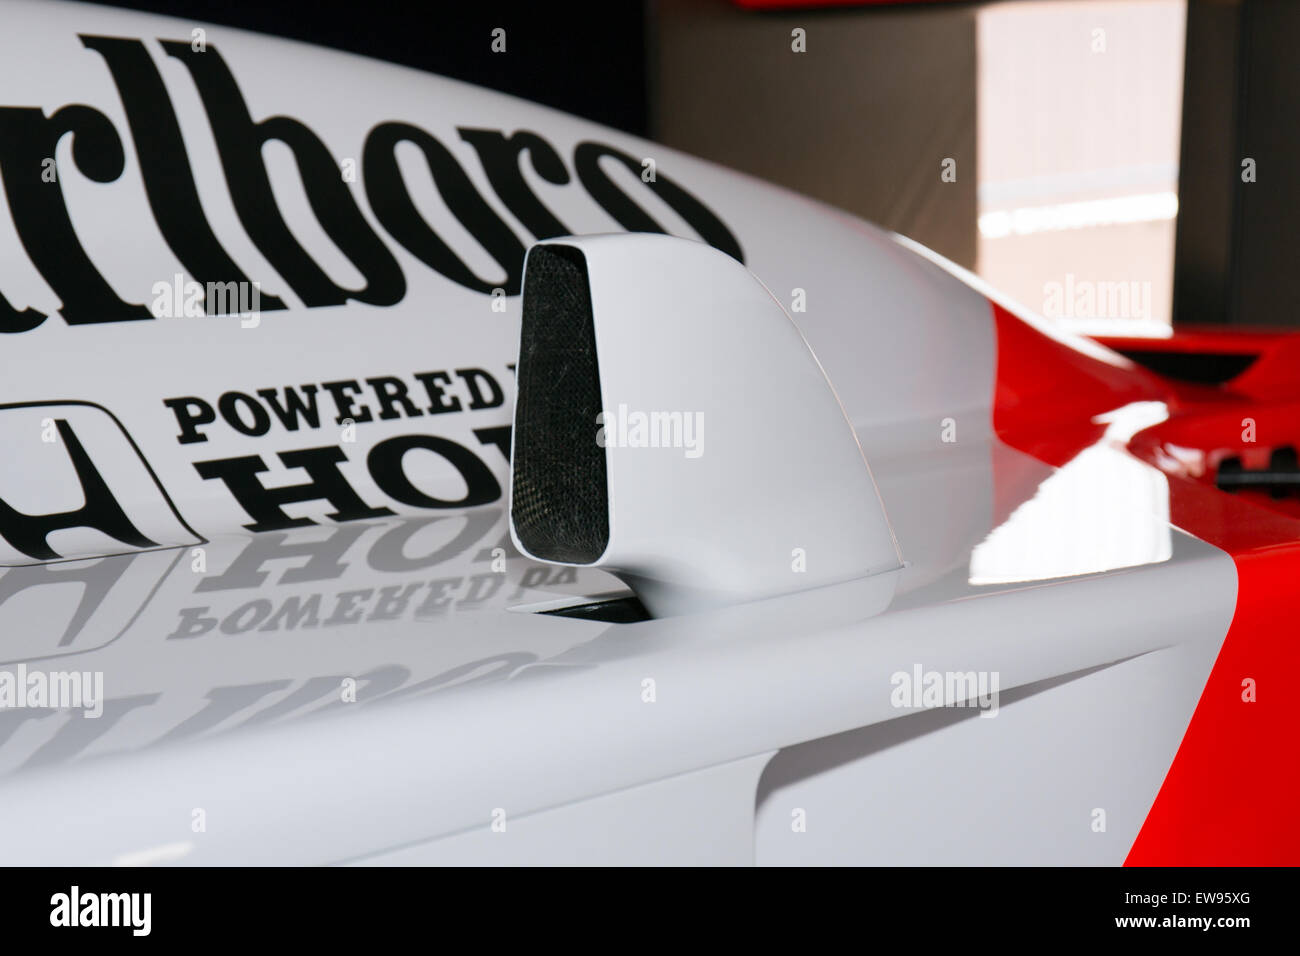 McLaren MP4-4 air-intake Suzuka RacingTheater Stock Photo